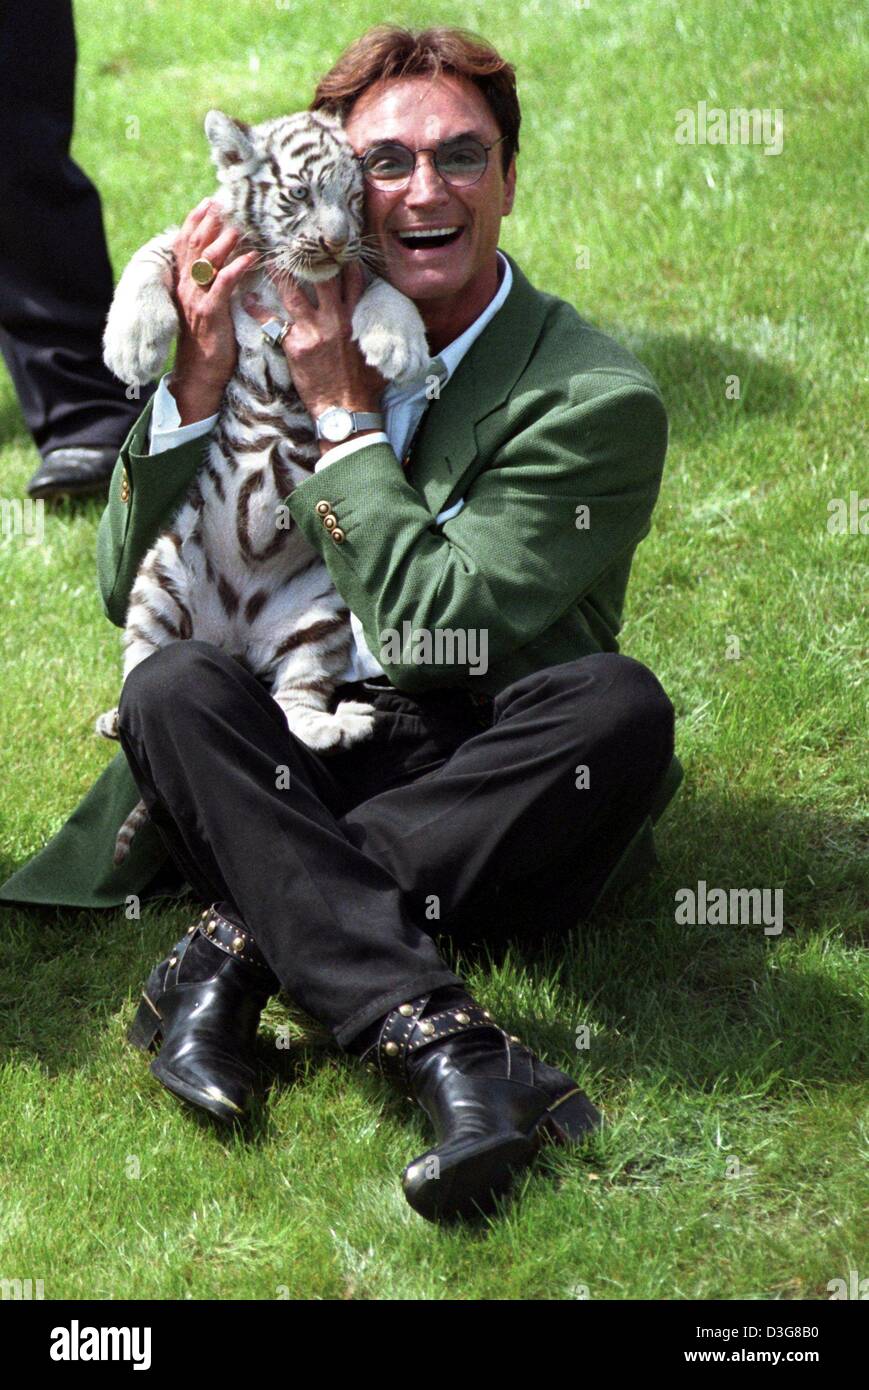 (Dpa file) - Roy corno dell'animale mago duo Siegfried e Roy, gioca con una tigre bianca a Hollywood parco di safari in Stuckenbrock, Germania, 16 gennaio 1997. Roy Horn è recuperare dopo essere stato aggredito da una tigre in scena a Las Vegas il 3 ottobre 2003. Il 59-anno-vecchio tedesco-nato esecutore, è stato morso da un bianco tigre del Bengala nel collo e trascinato fuori dal palcoscenico durante una perfo Foto Stock